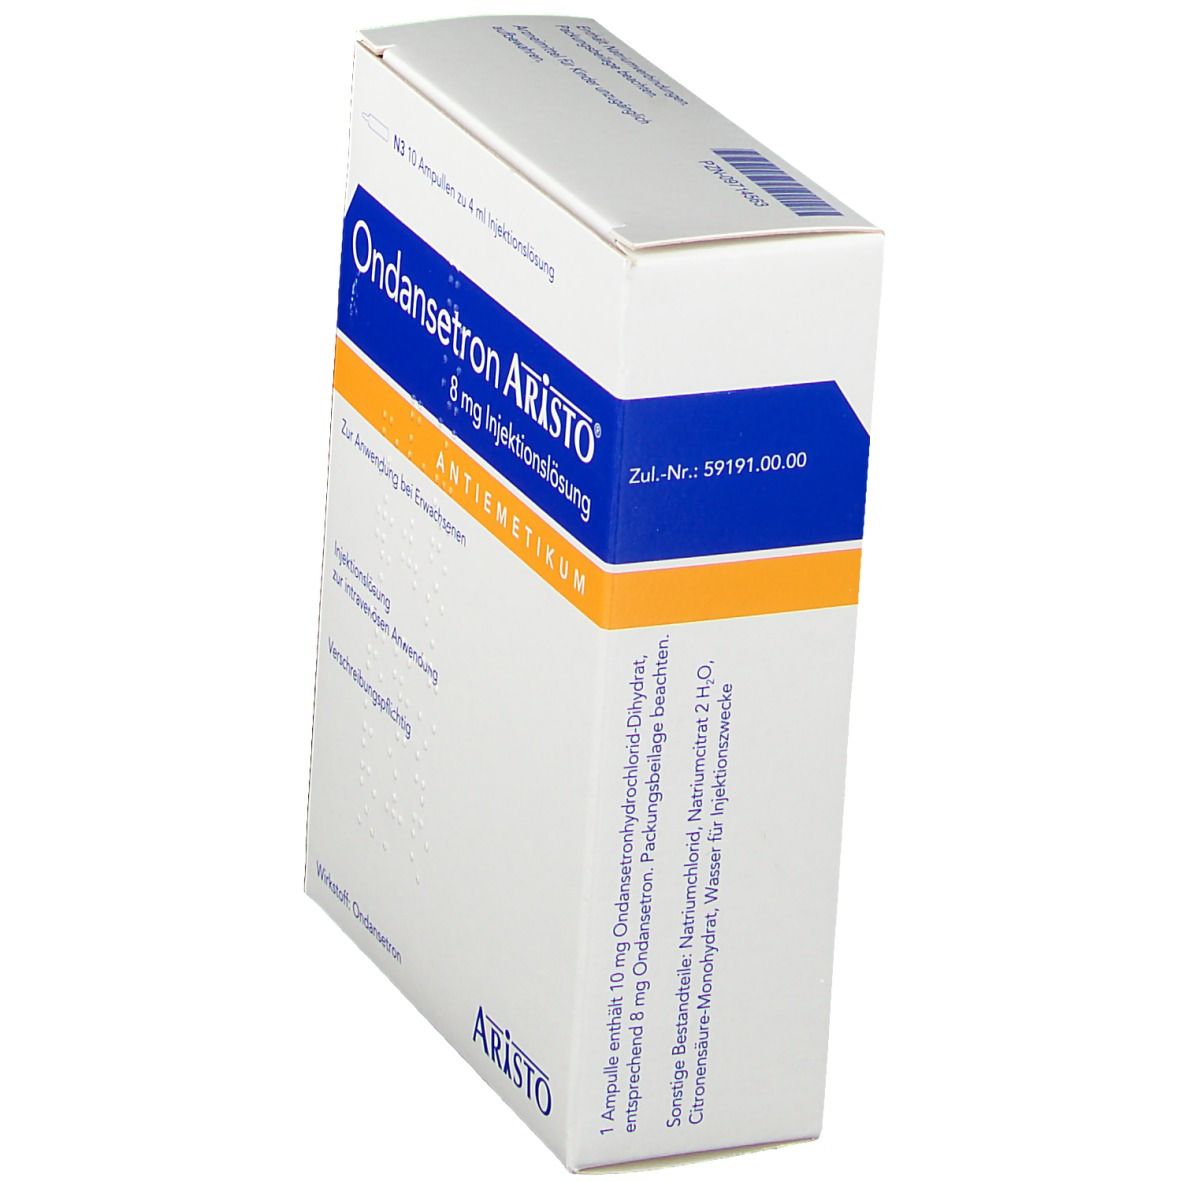 Ondansetron Aristo® 8 mg